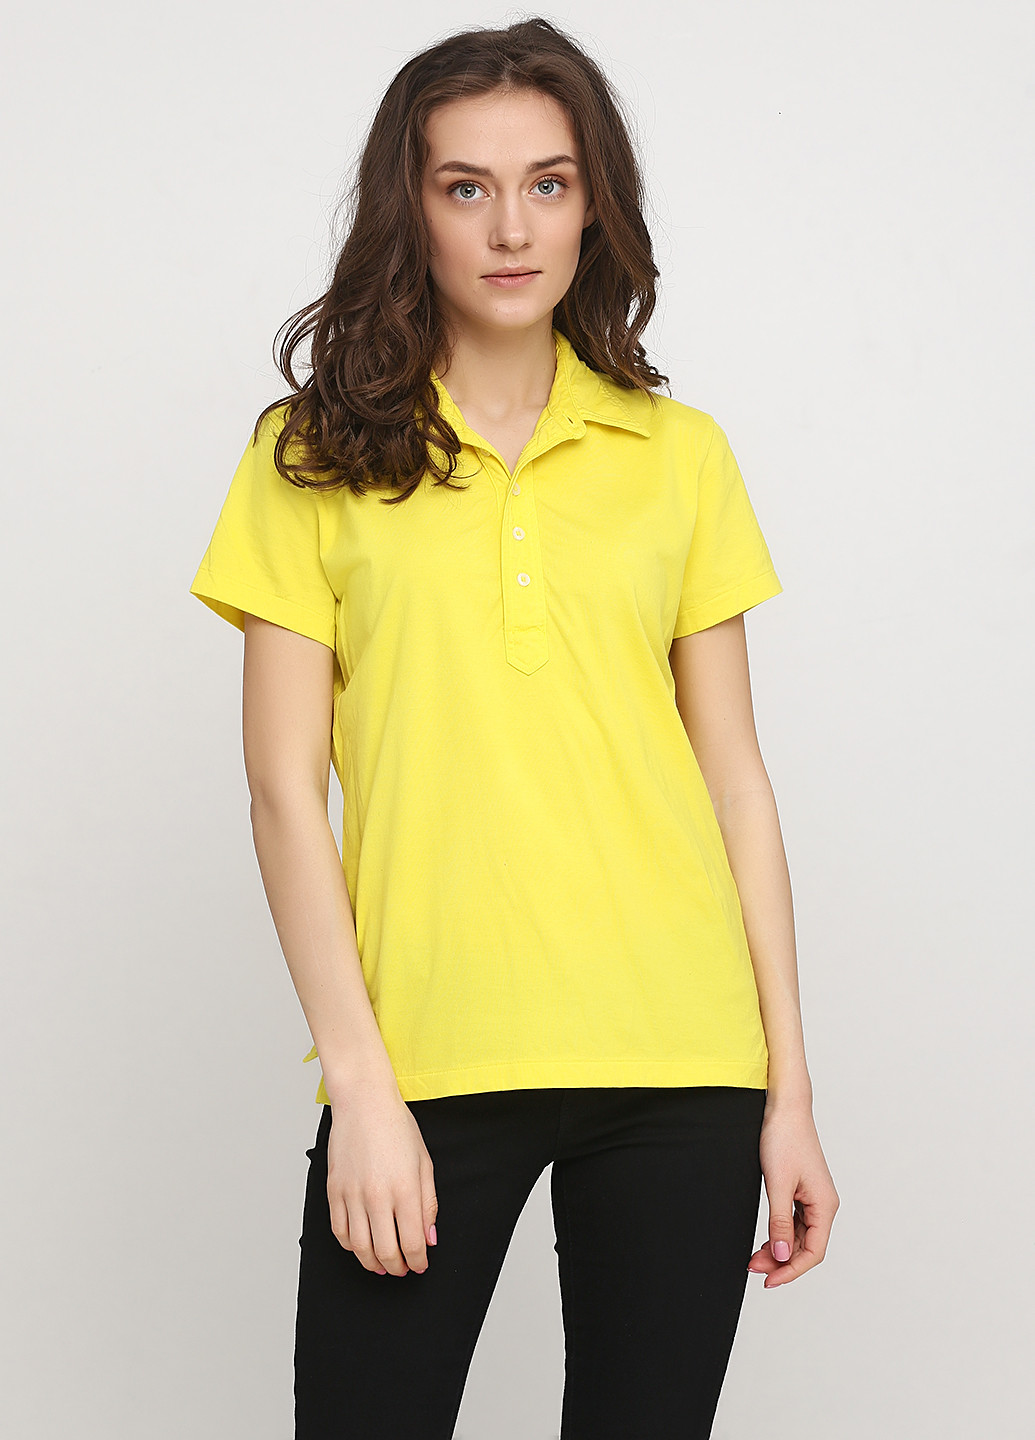 Лимонная женская футболка-поло Ralph Lauren однотонная